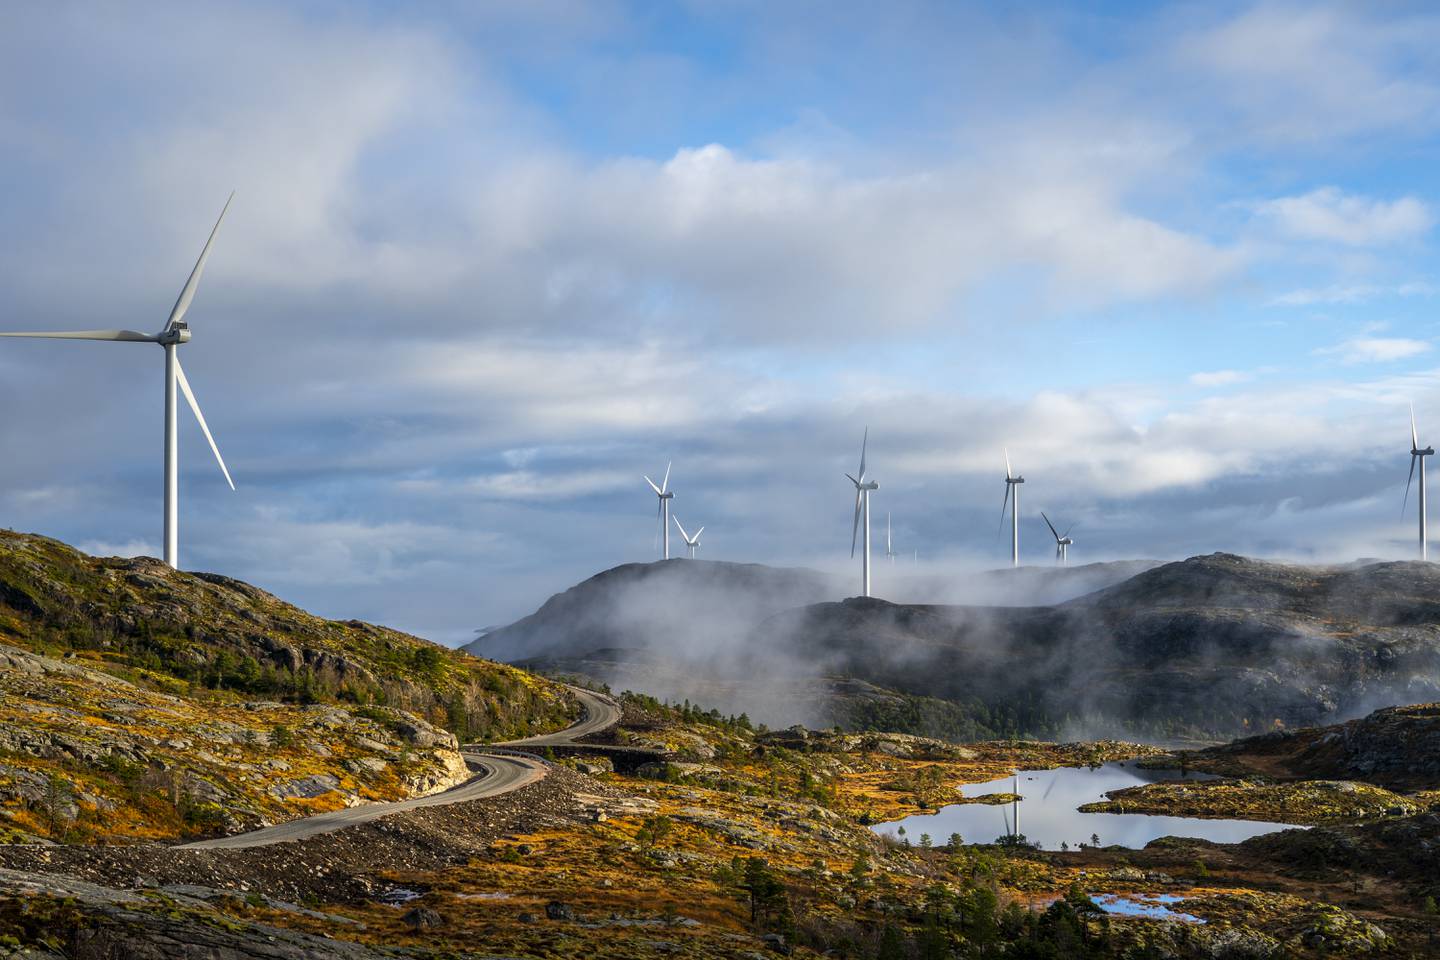 Åfjord Fosen 20201013. 
Storheia vindpark er den største av vindparkene i porteføljen til Fosen Vind, og den andre av vindparkene som ble bygget. Da den ble overført til ordinær drift i februar 2020 var den Norges største med 80 turbiner og en installert effekt på 288 MW.
Foto: Heiko Junge / NTB